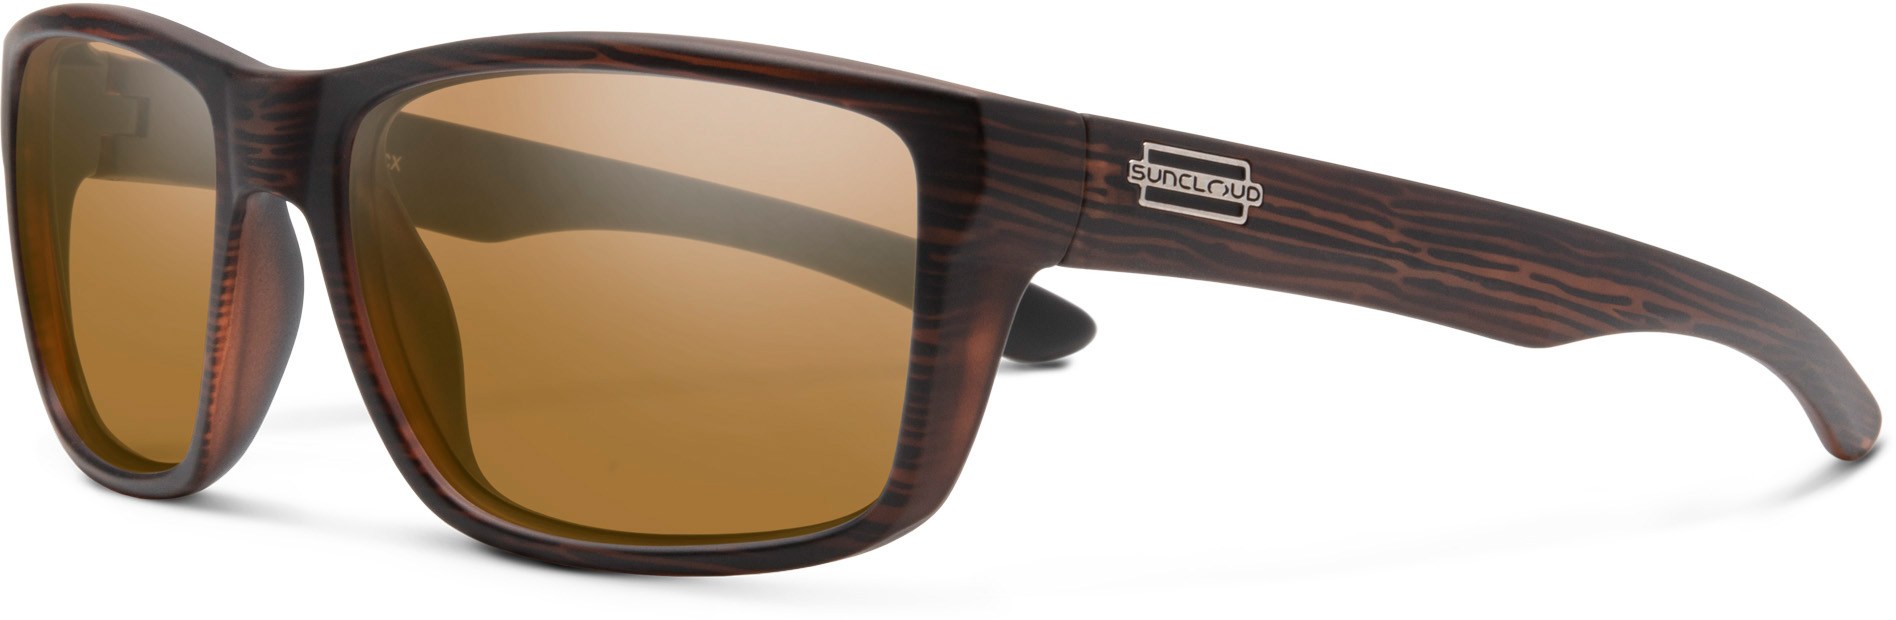 Поляризованные солнцезащитные очки Mayor Suncloud, коричневый разоблачение поляризованных солнцезащитных очков blenders eyewear цвет future ruler pol